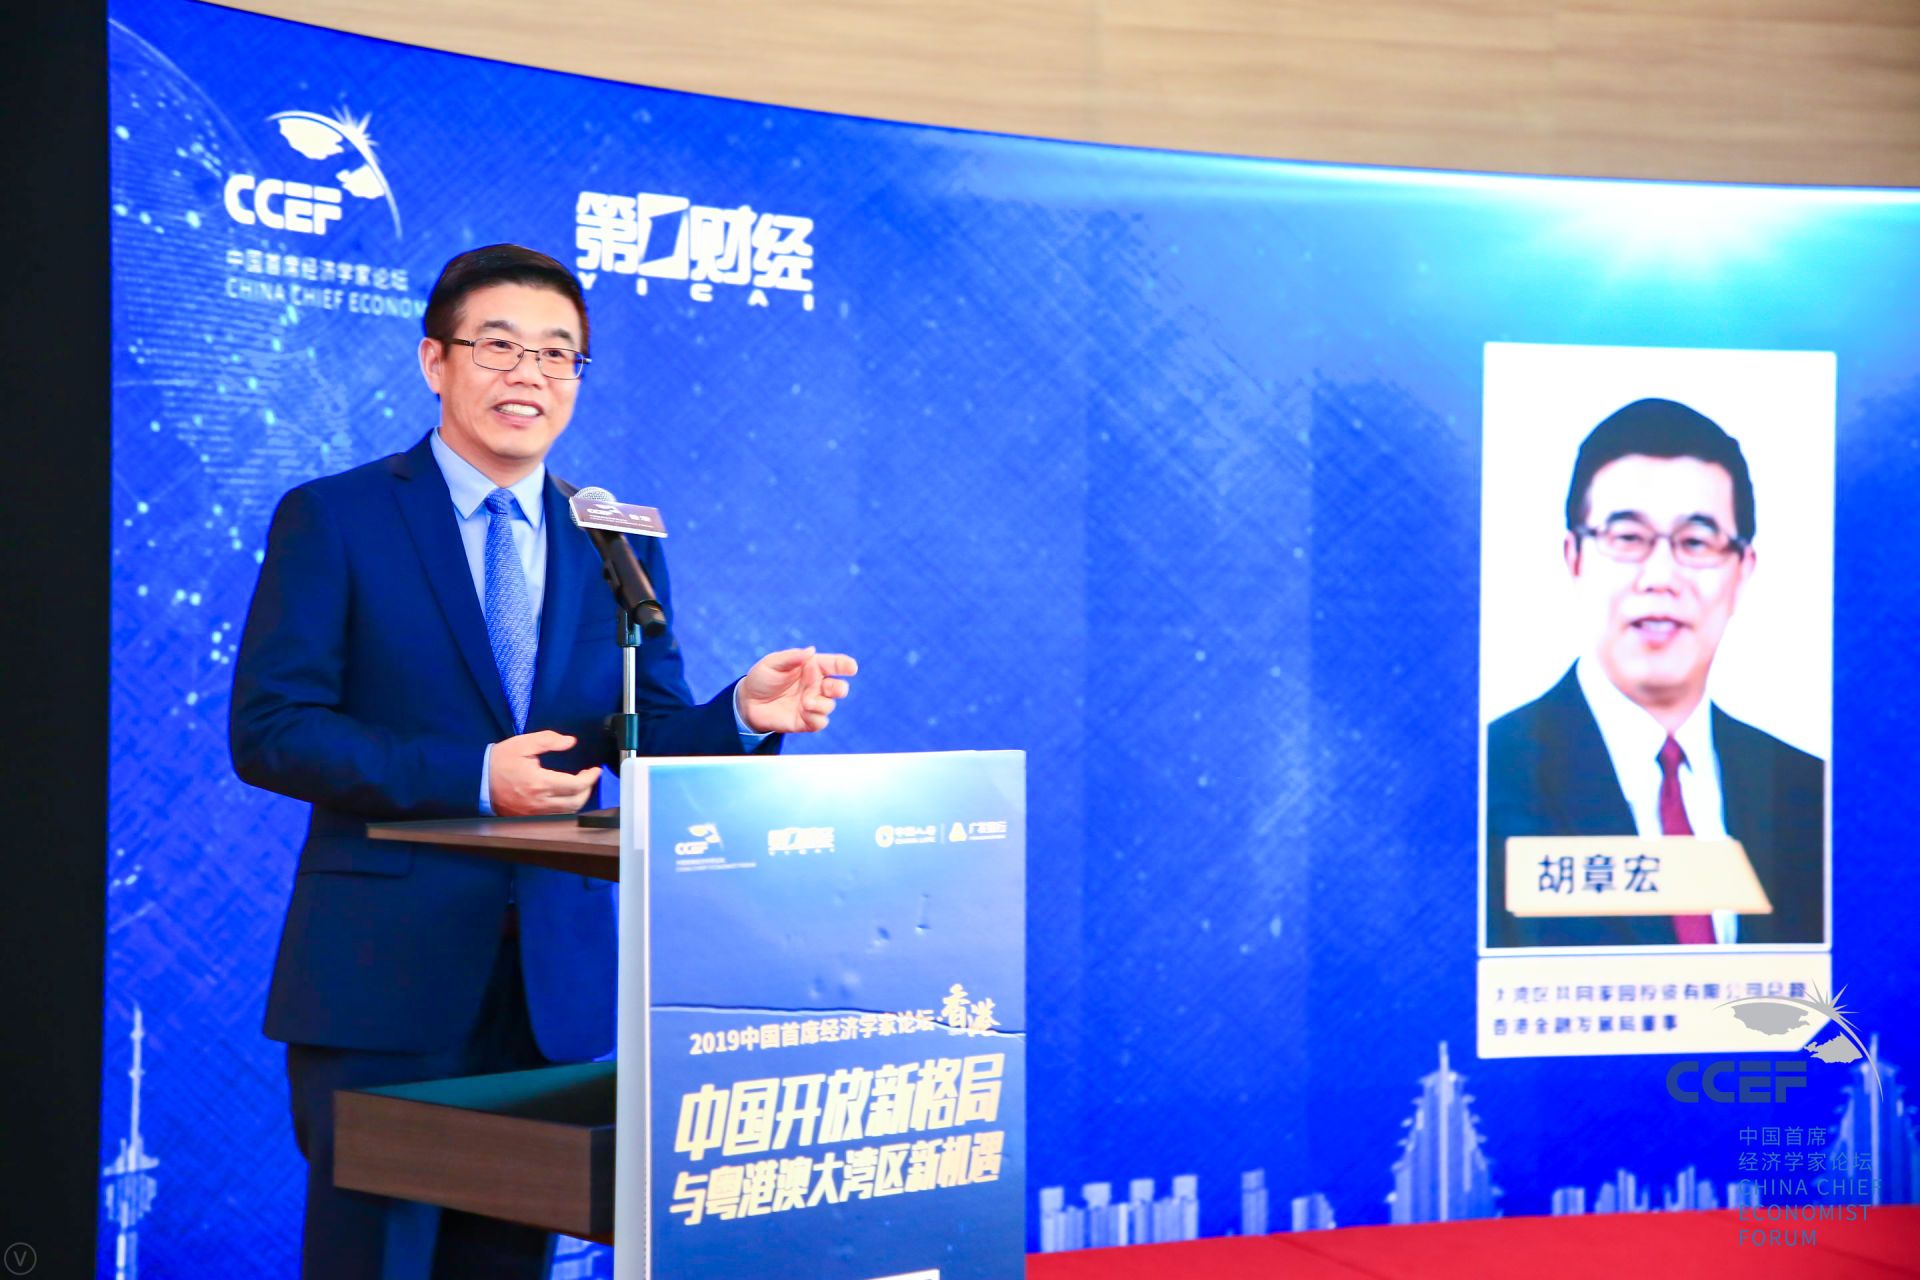 2019中国首席经济学家论坛（香港）隆重举行 中国开放新格局与粤港澳大湾区新机遇